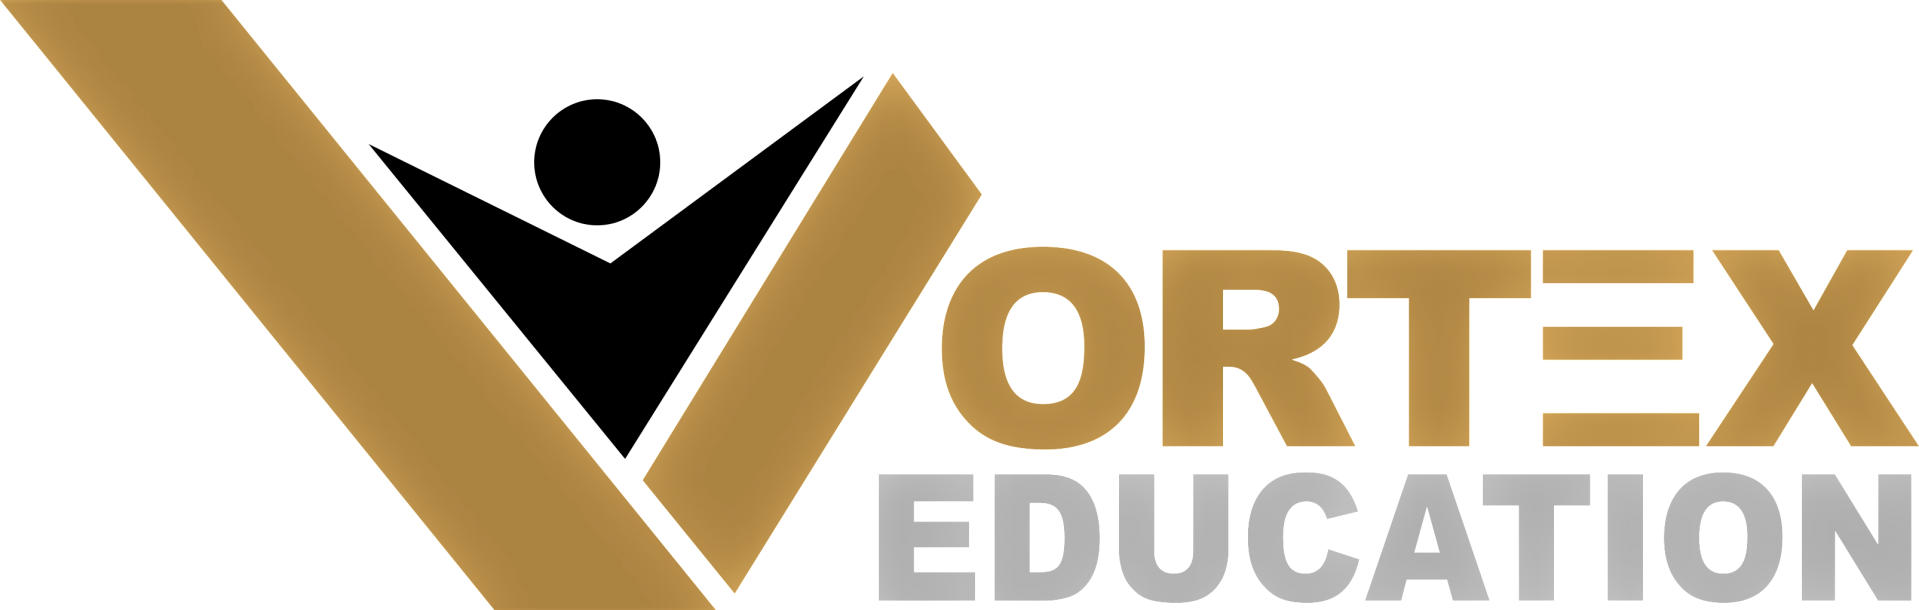 Vortex Education Online Courses